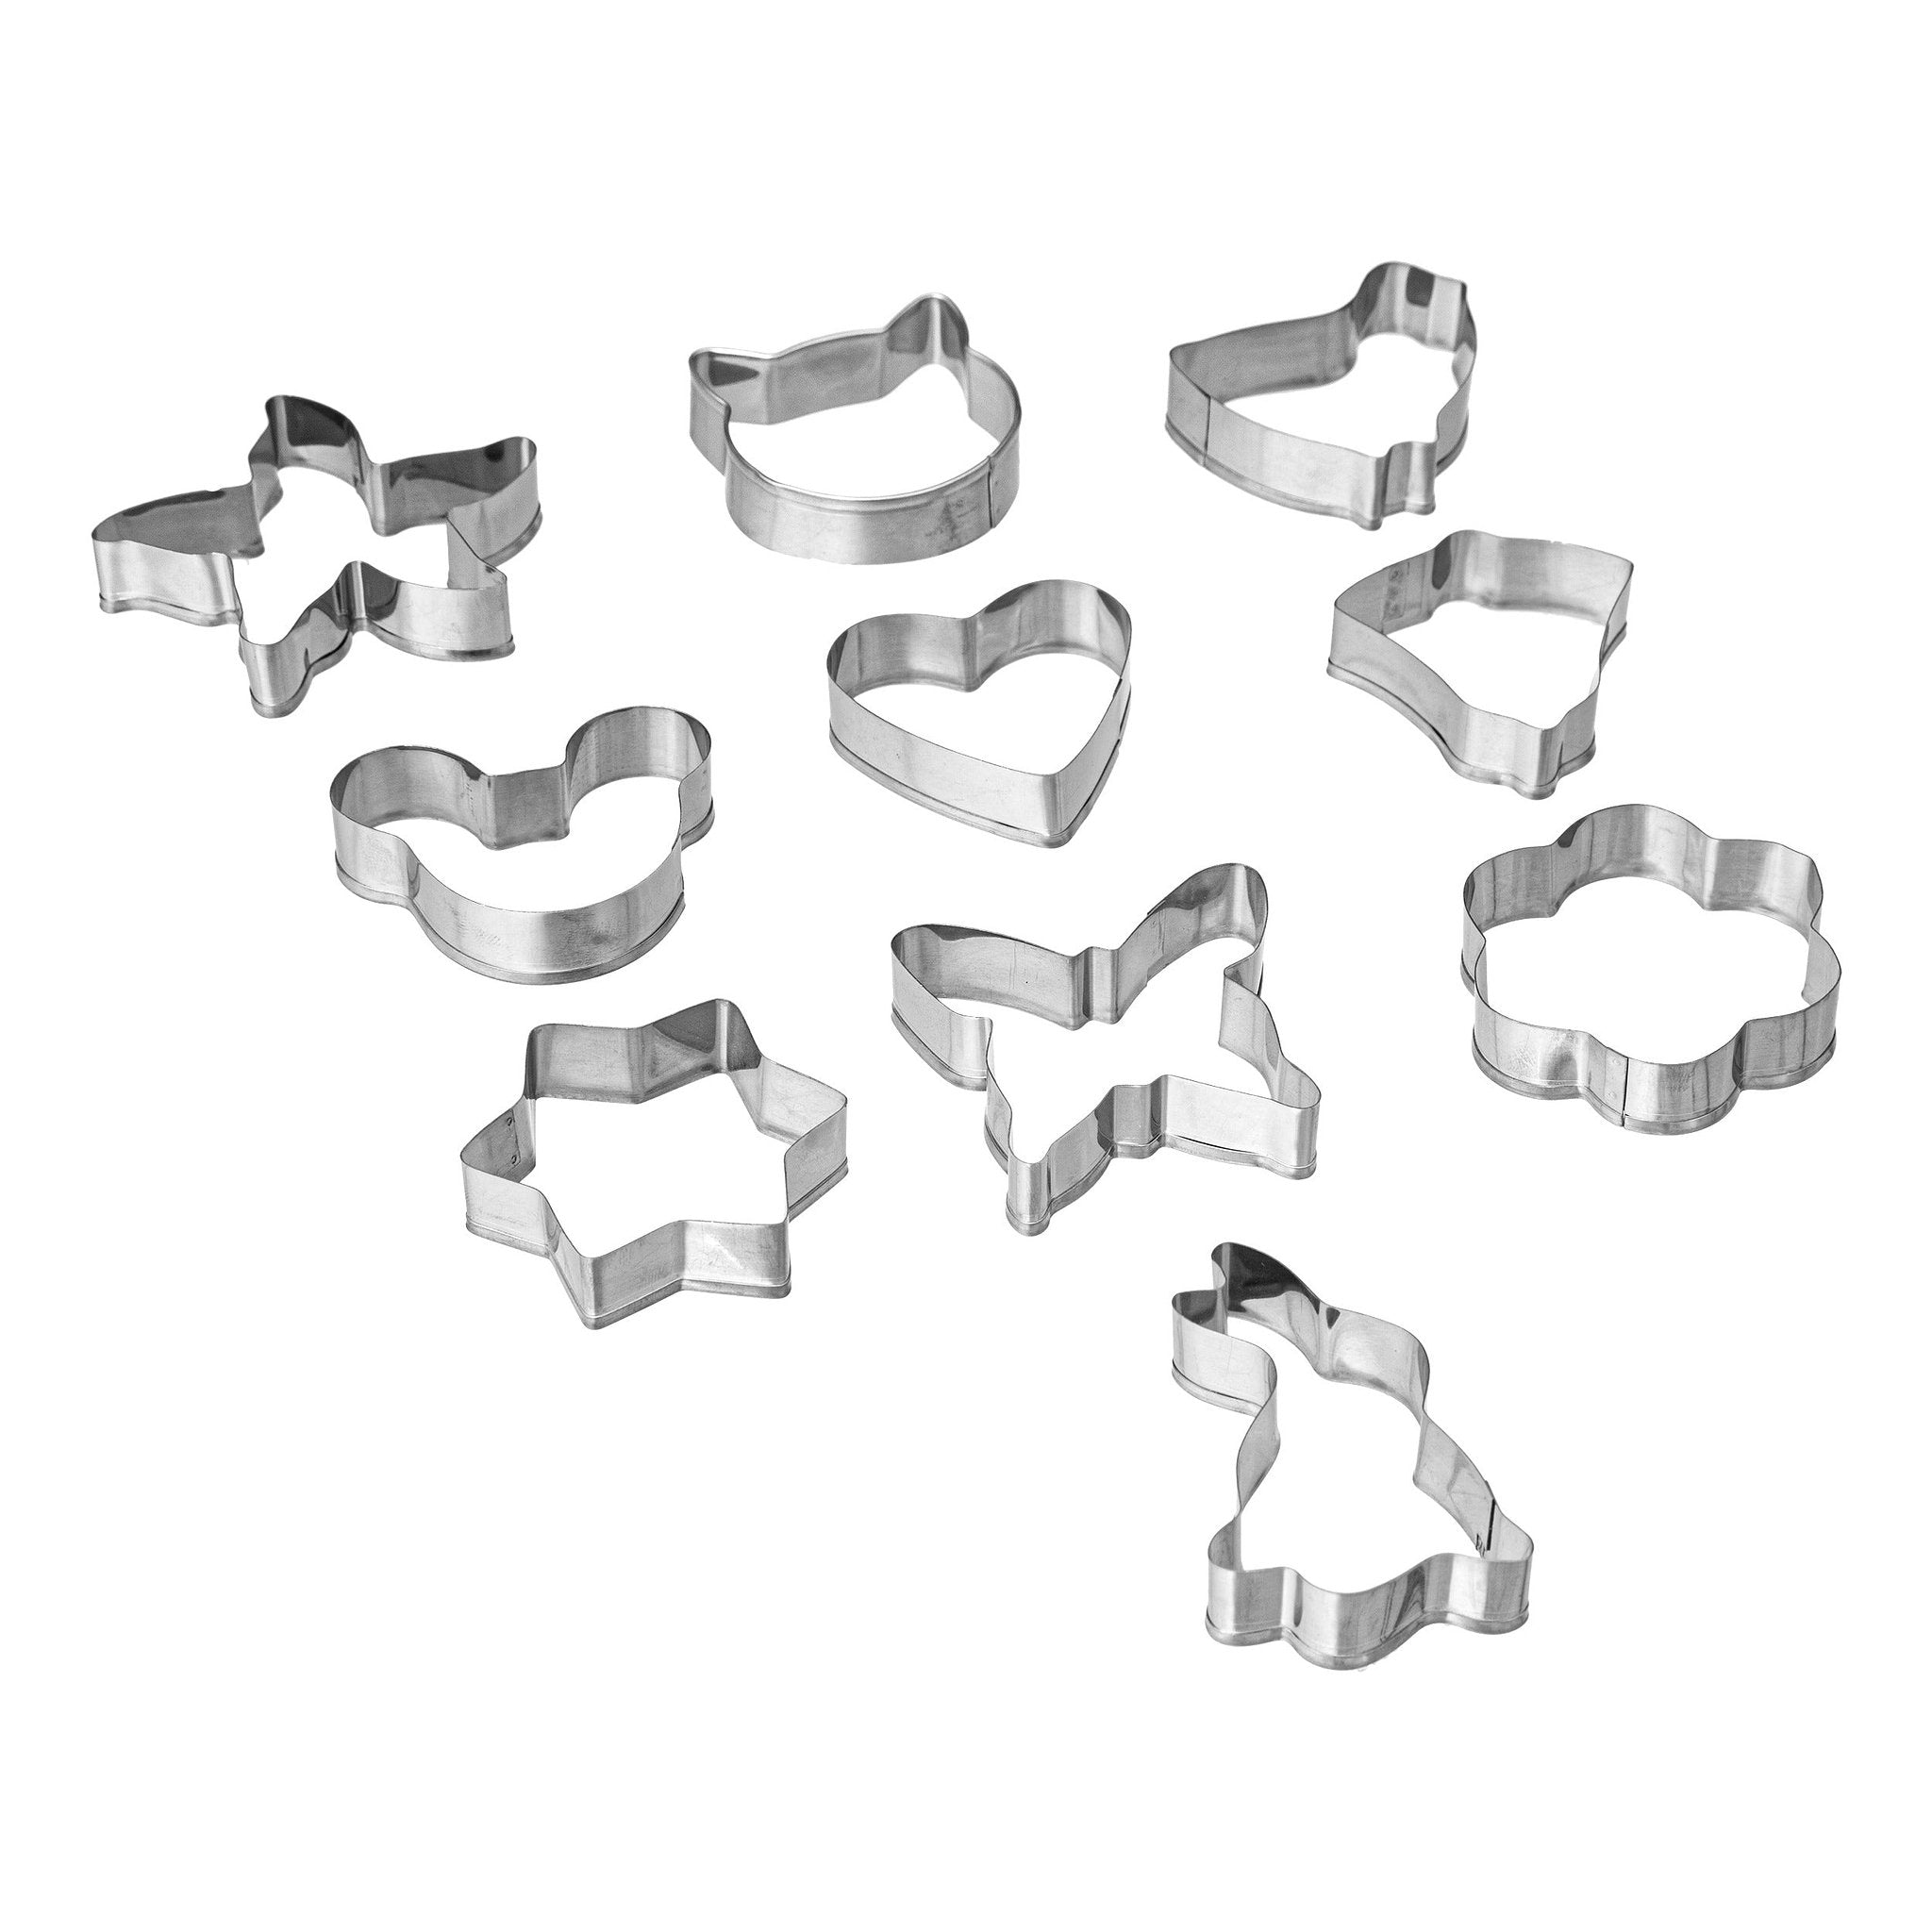 5Five Roestvrije Koekjesvormpjes/Uitsteekvormpjes - Set van 10 stuks - Zilver